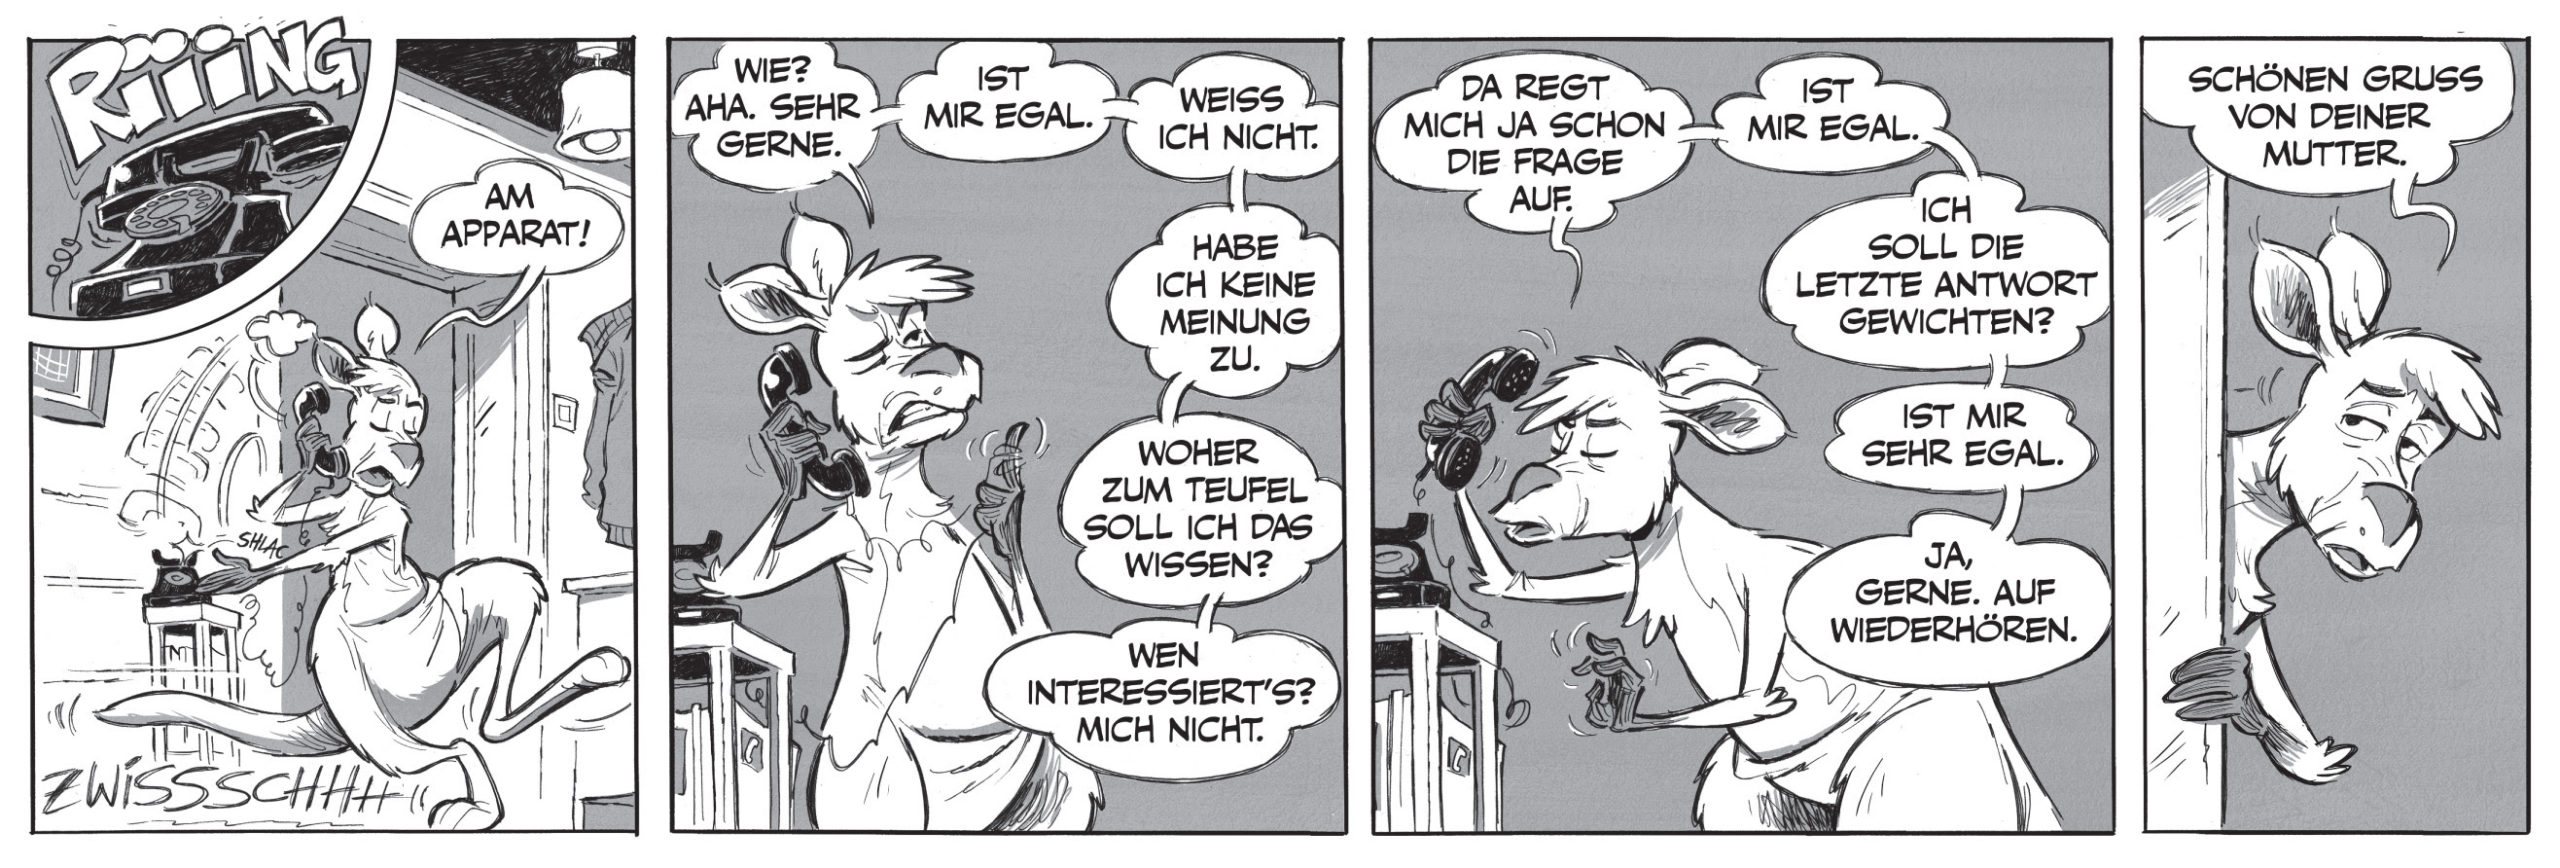 Die Känguru-Comics von Bernd Kissel und Marc-Uwe Kling: Gruß von Mutter